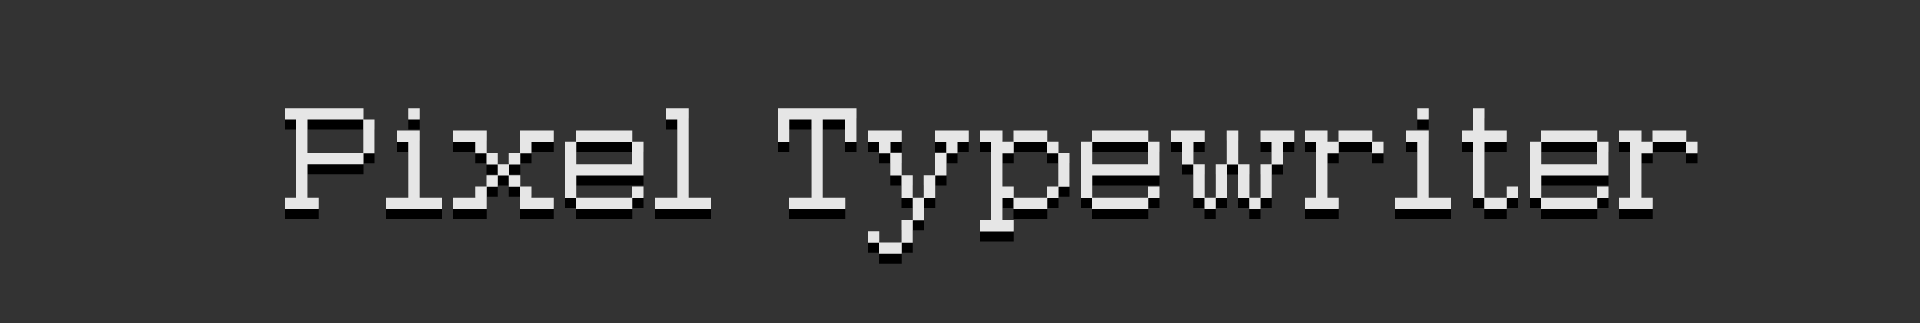 Pixel Typewritter